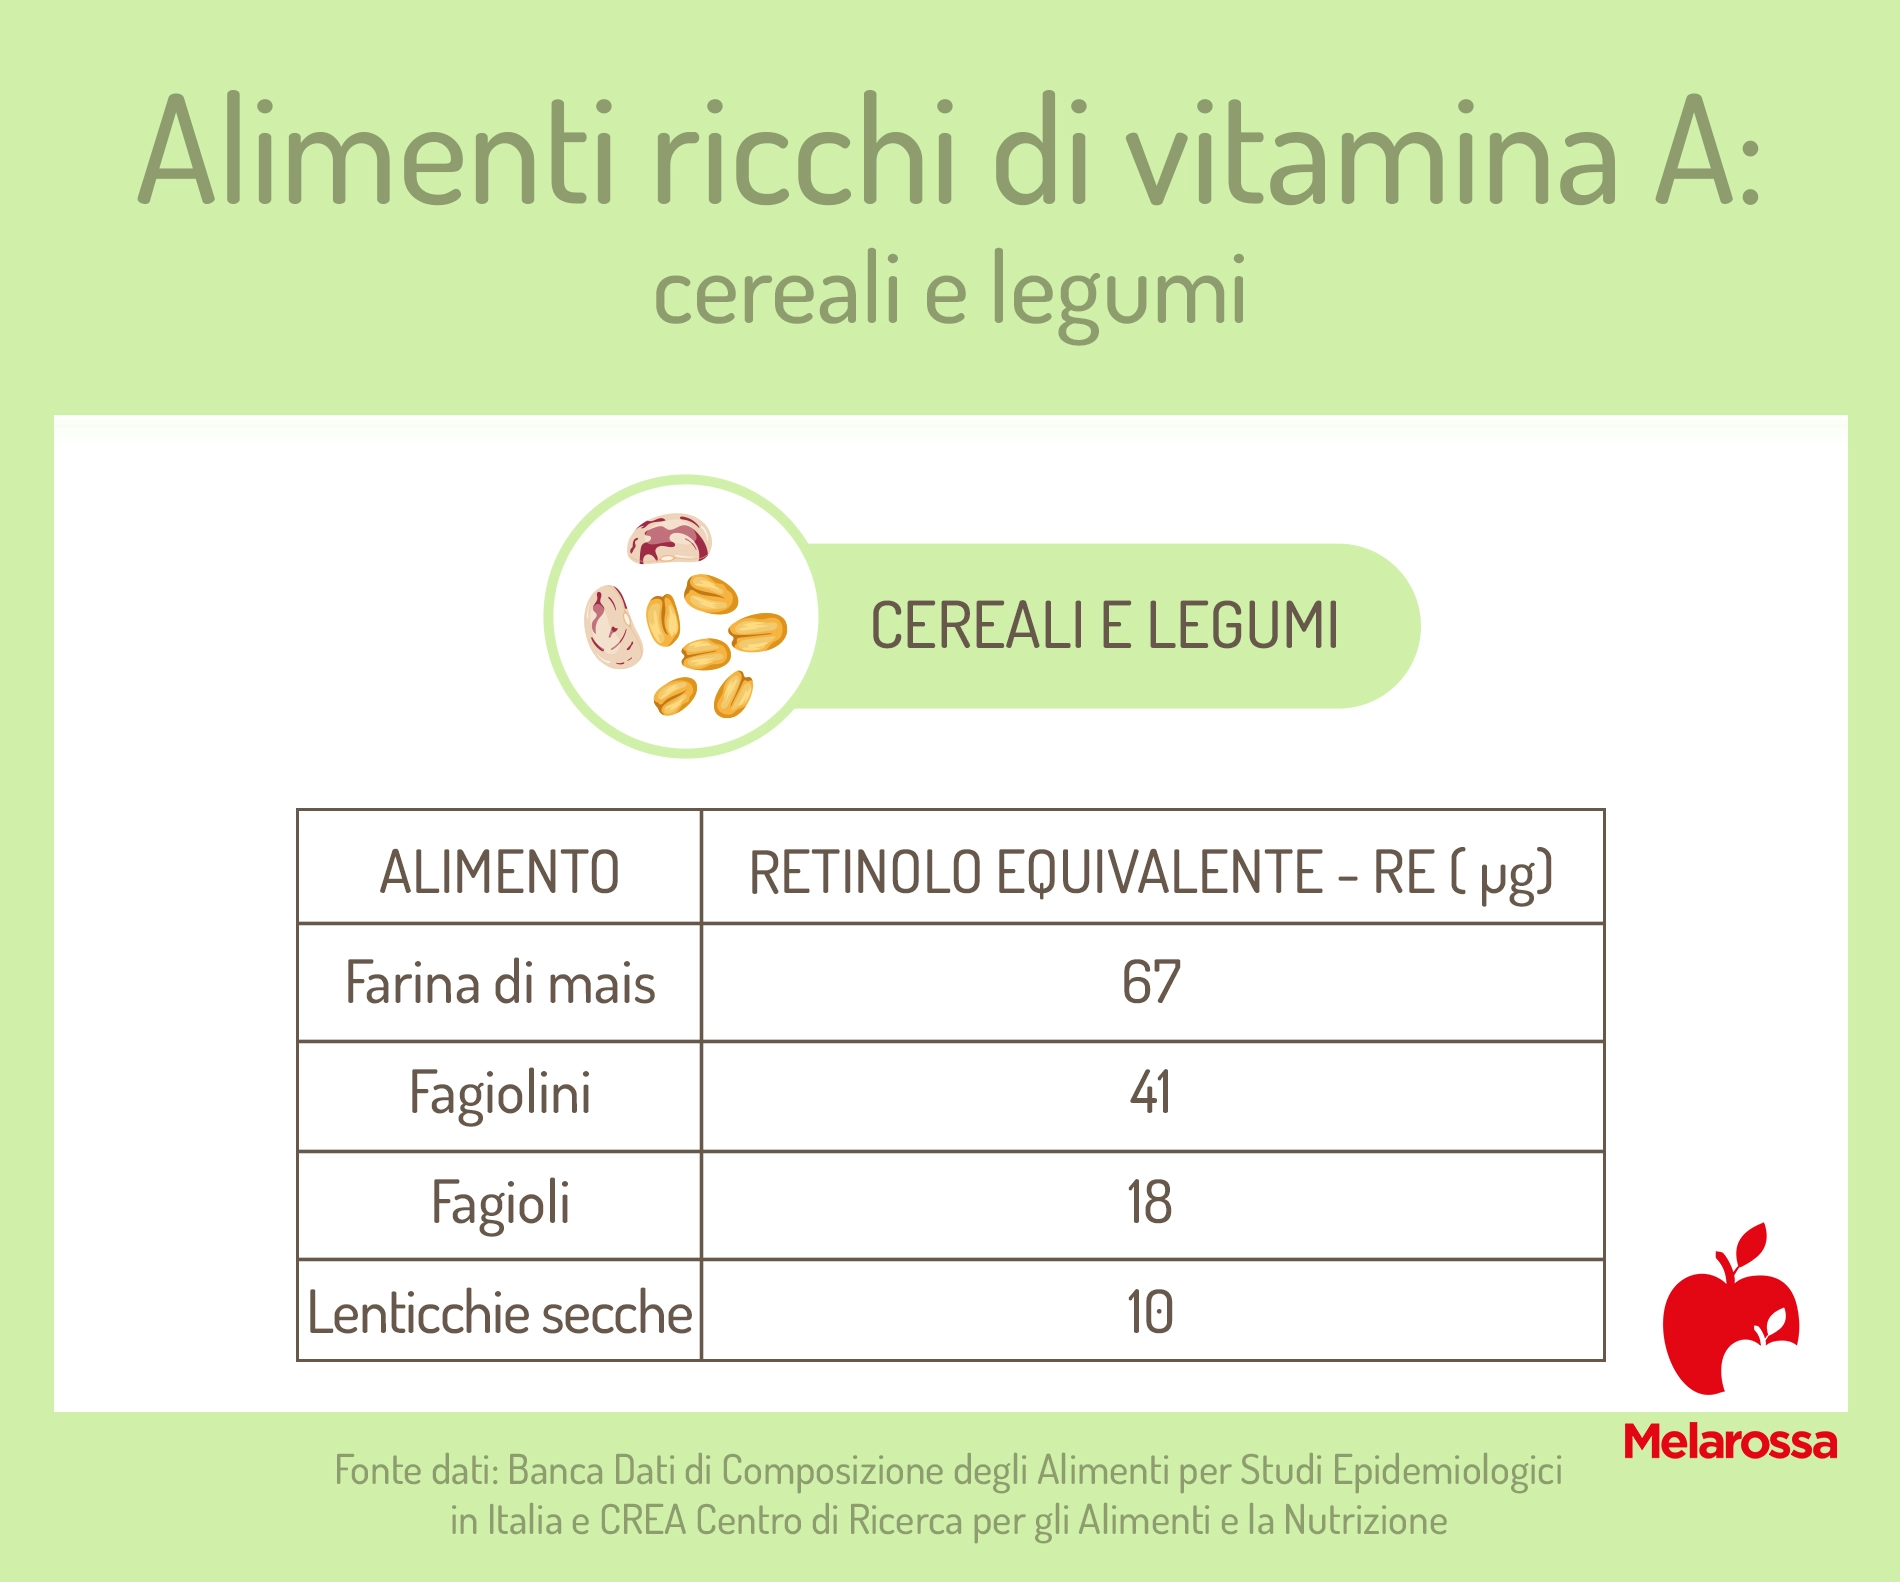 alimenti ricchi di vitamina A: cereali e legumi